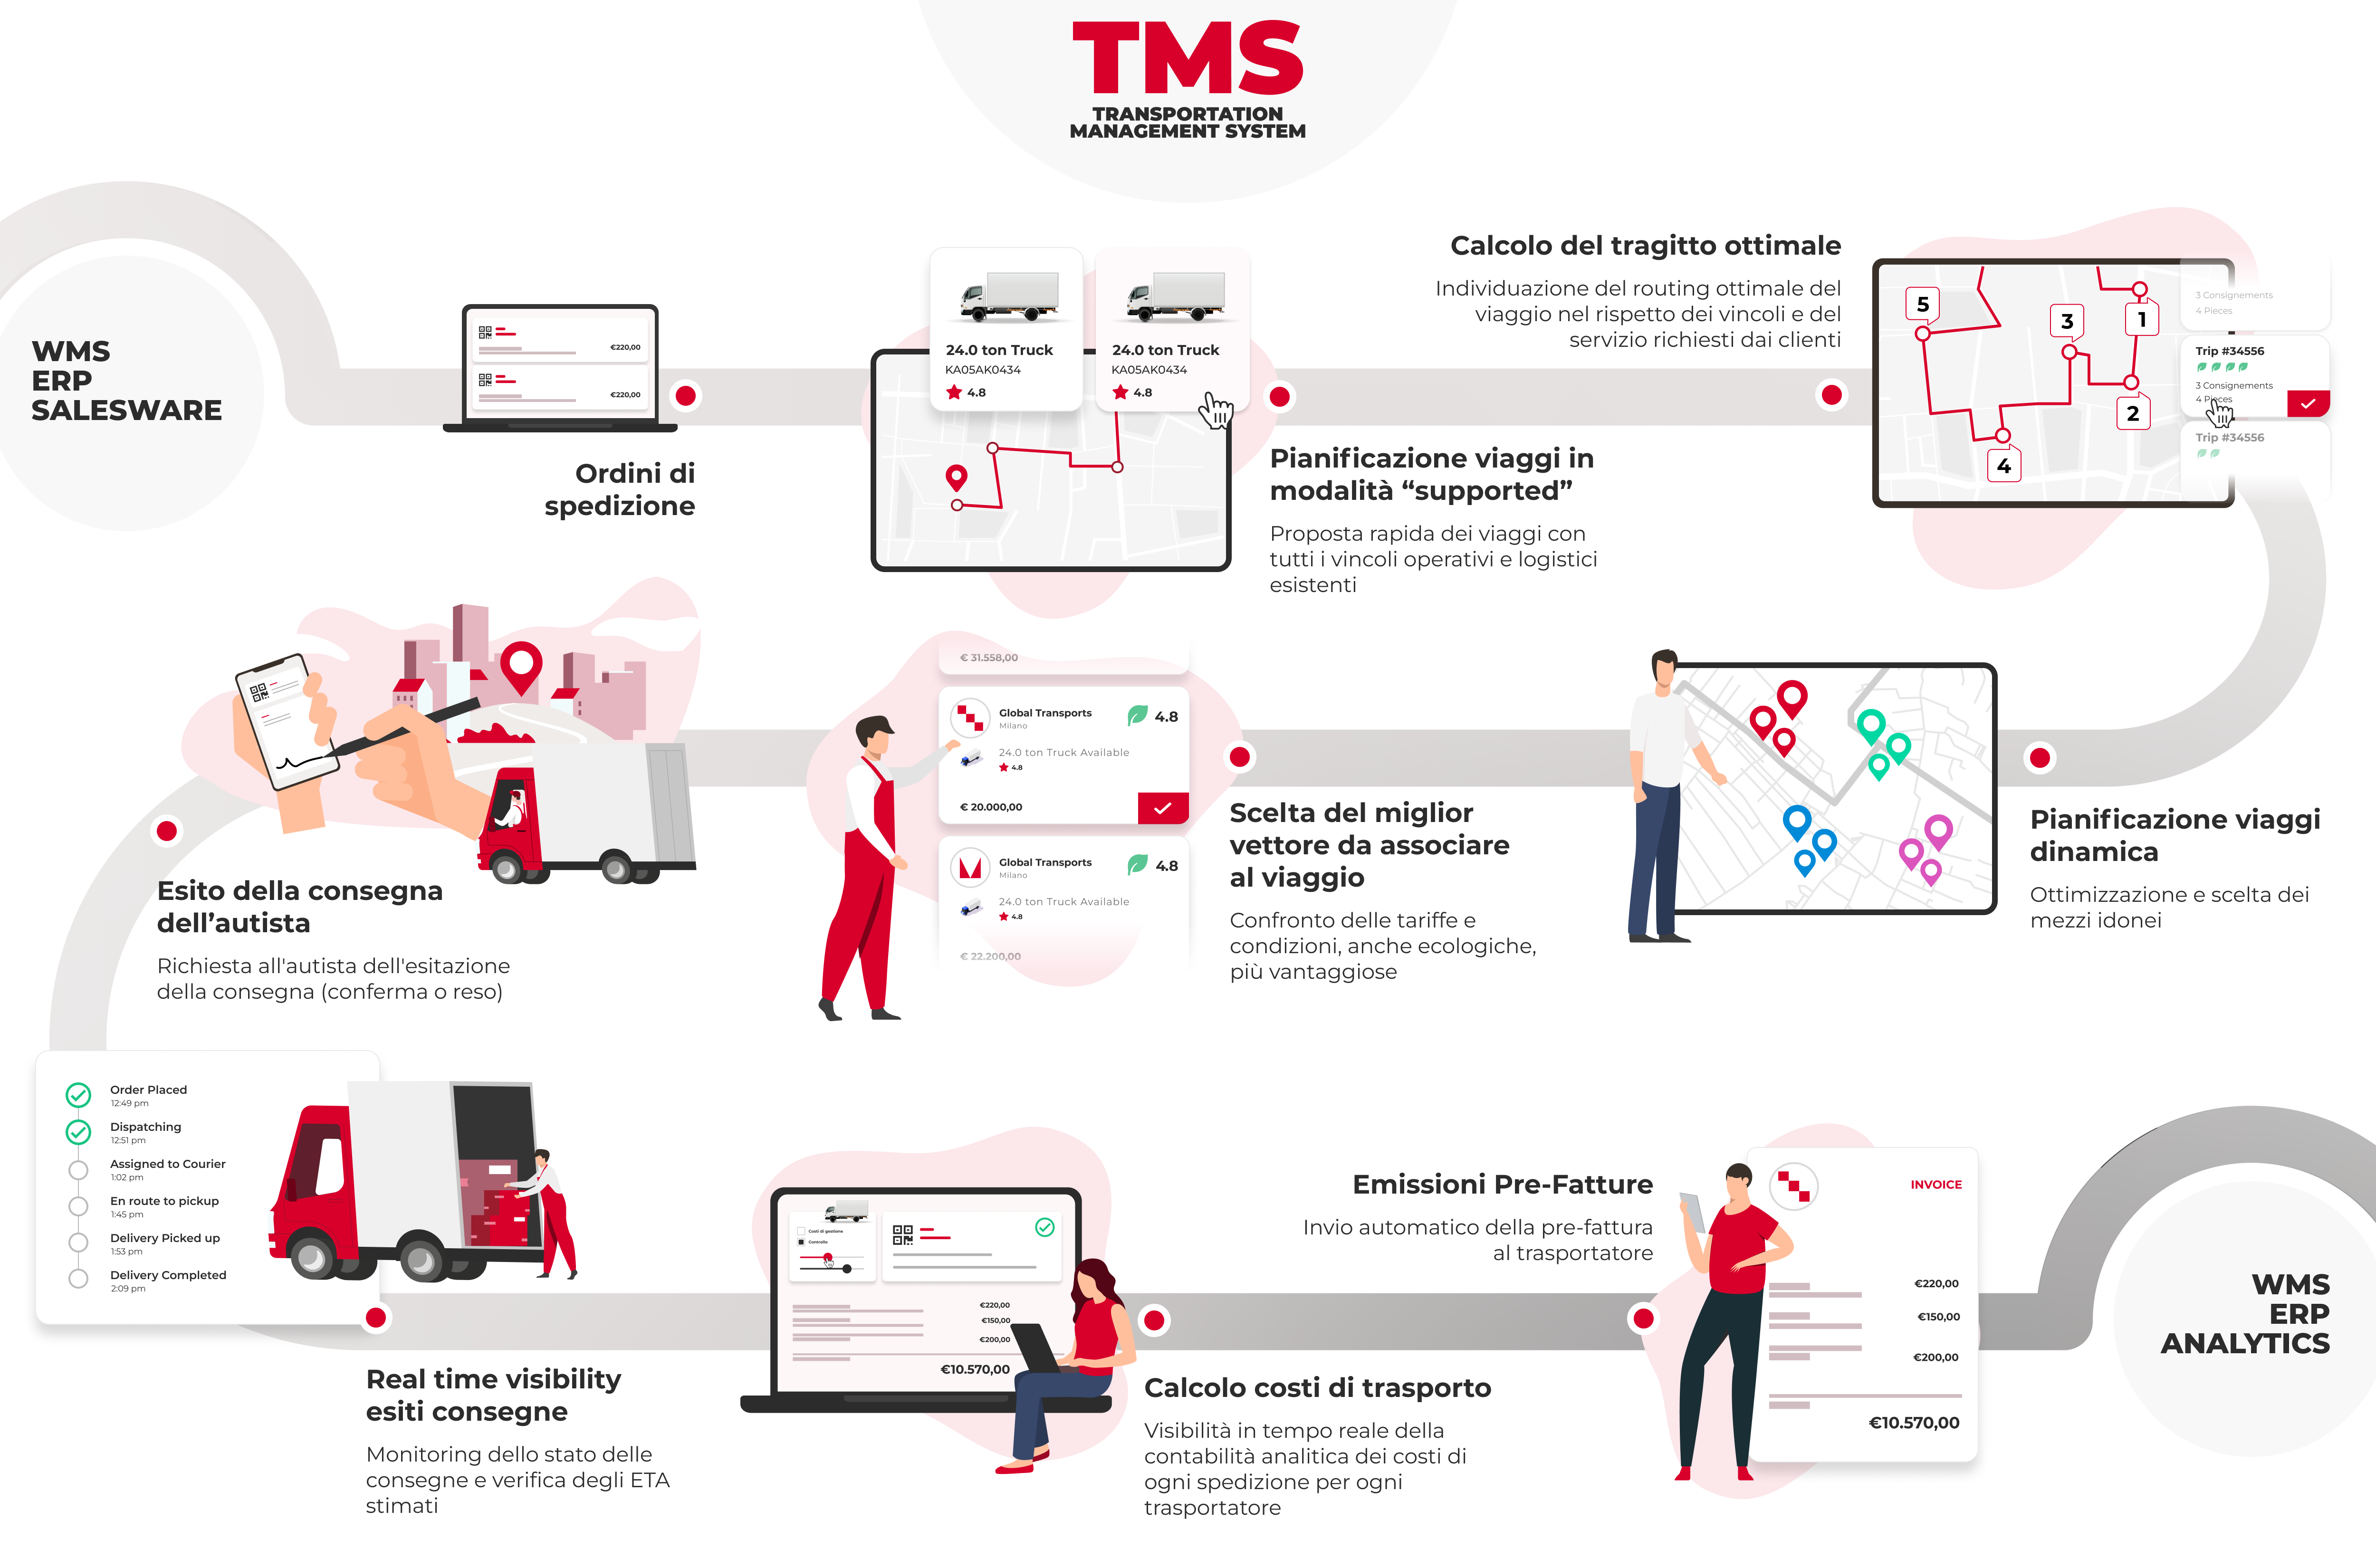 TMS Replica Sistemi: pianifica le spedizioni, certifica le consegne e controlla i costi dei trasporti